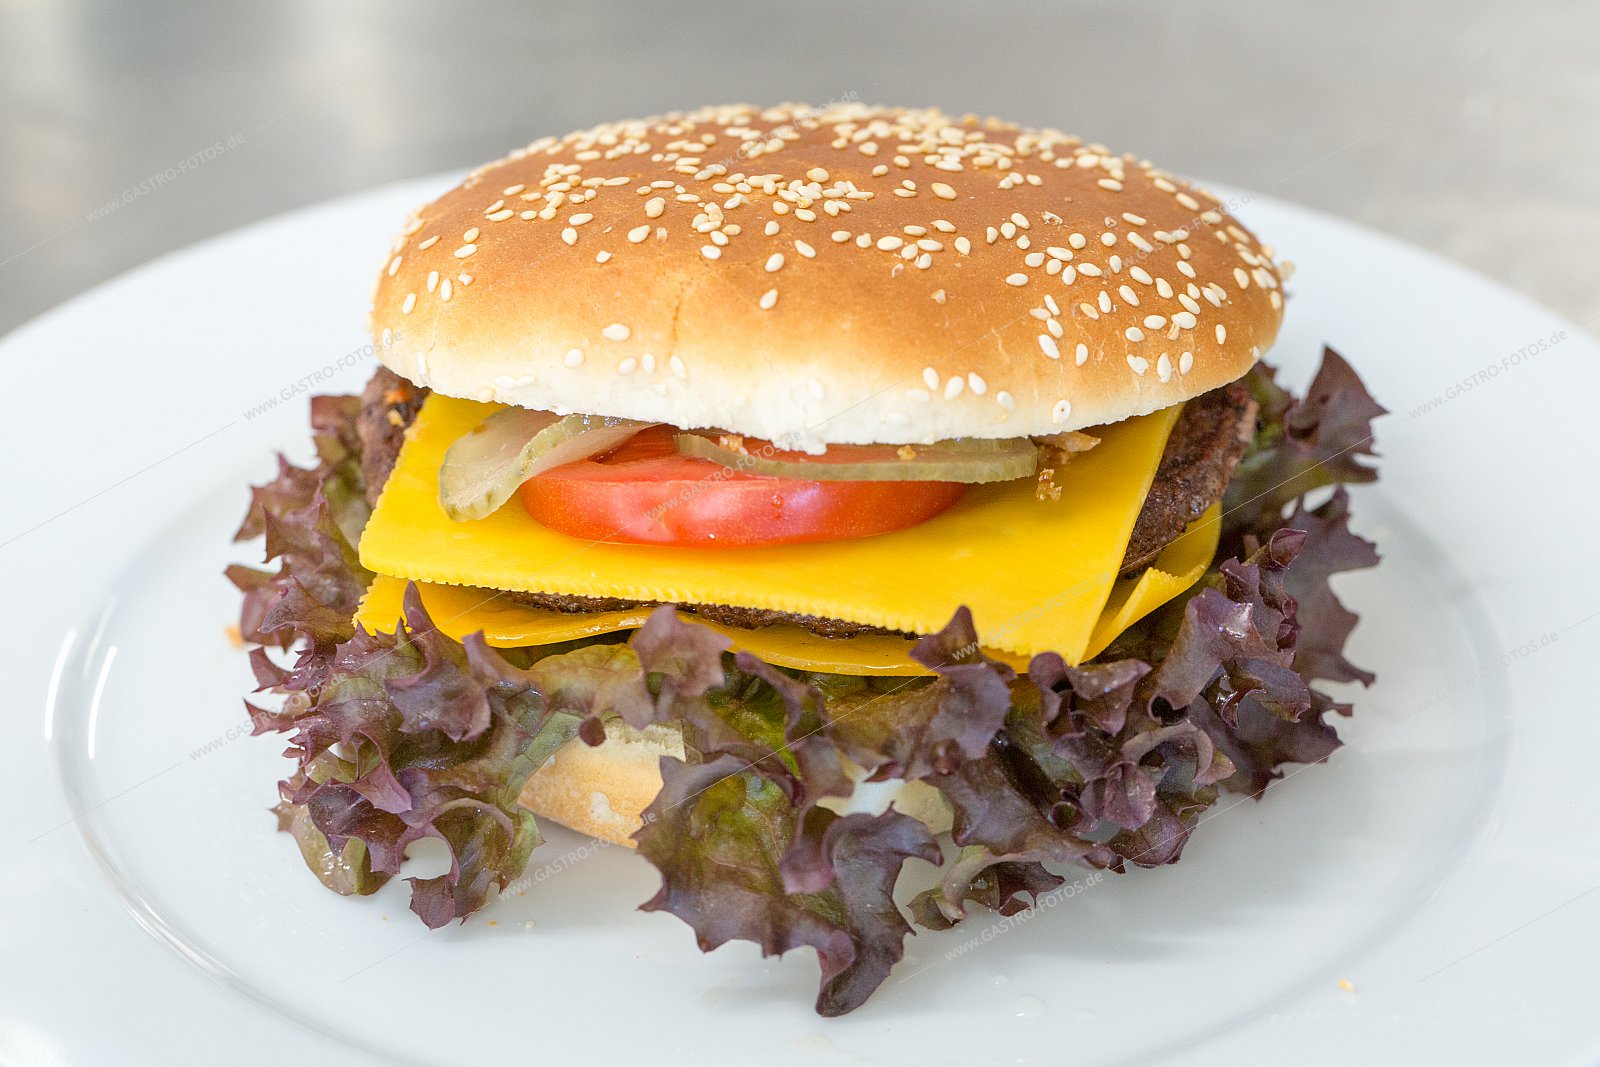 Cheeseburger - Burger